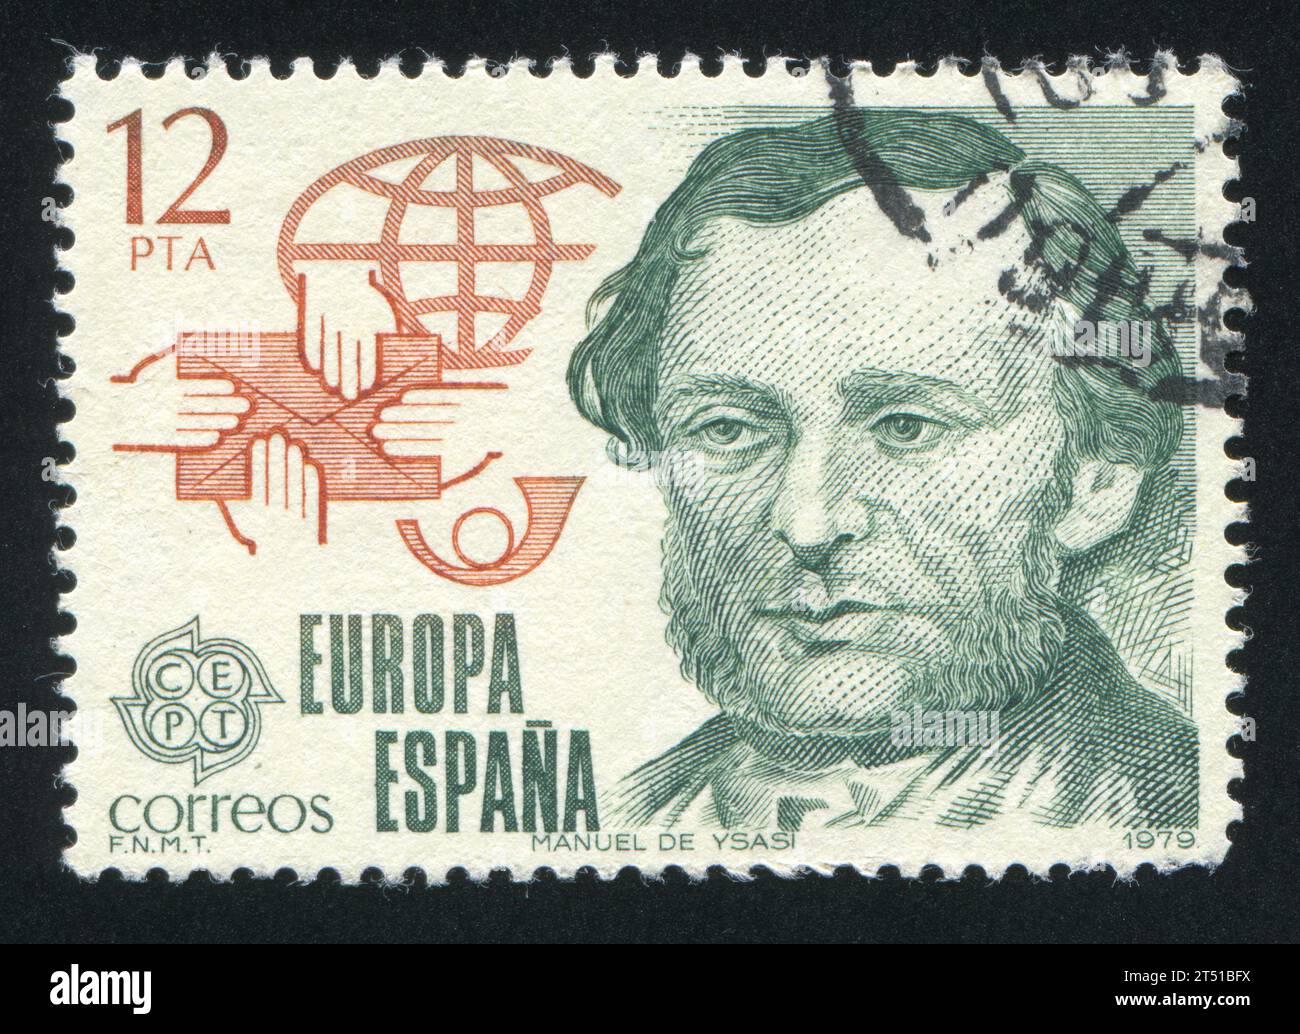 SPAGNA - CIRCA 1979: Francobollo stampato dalla Spagna, mostra il riformatore postale Manuel Ysasi, circa 1979 Foto Stock